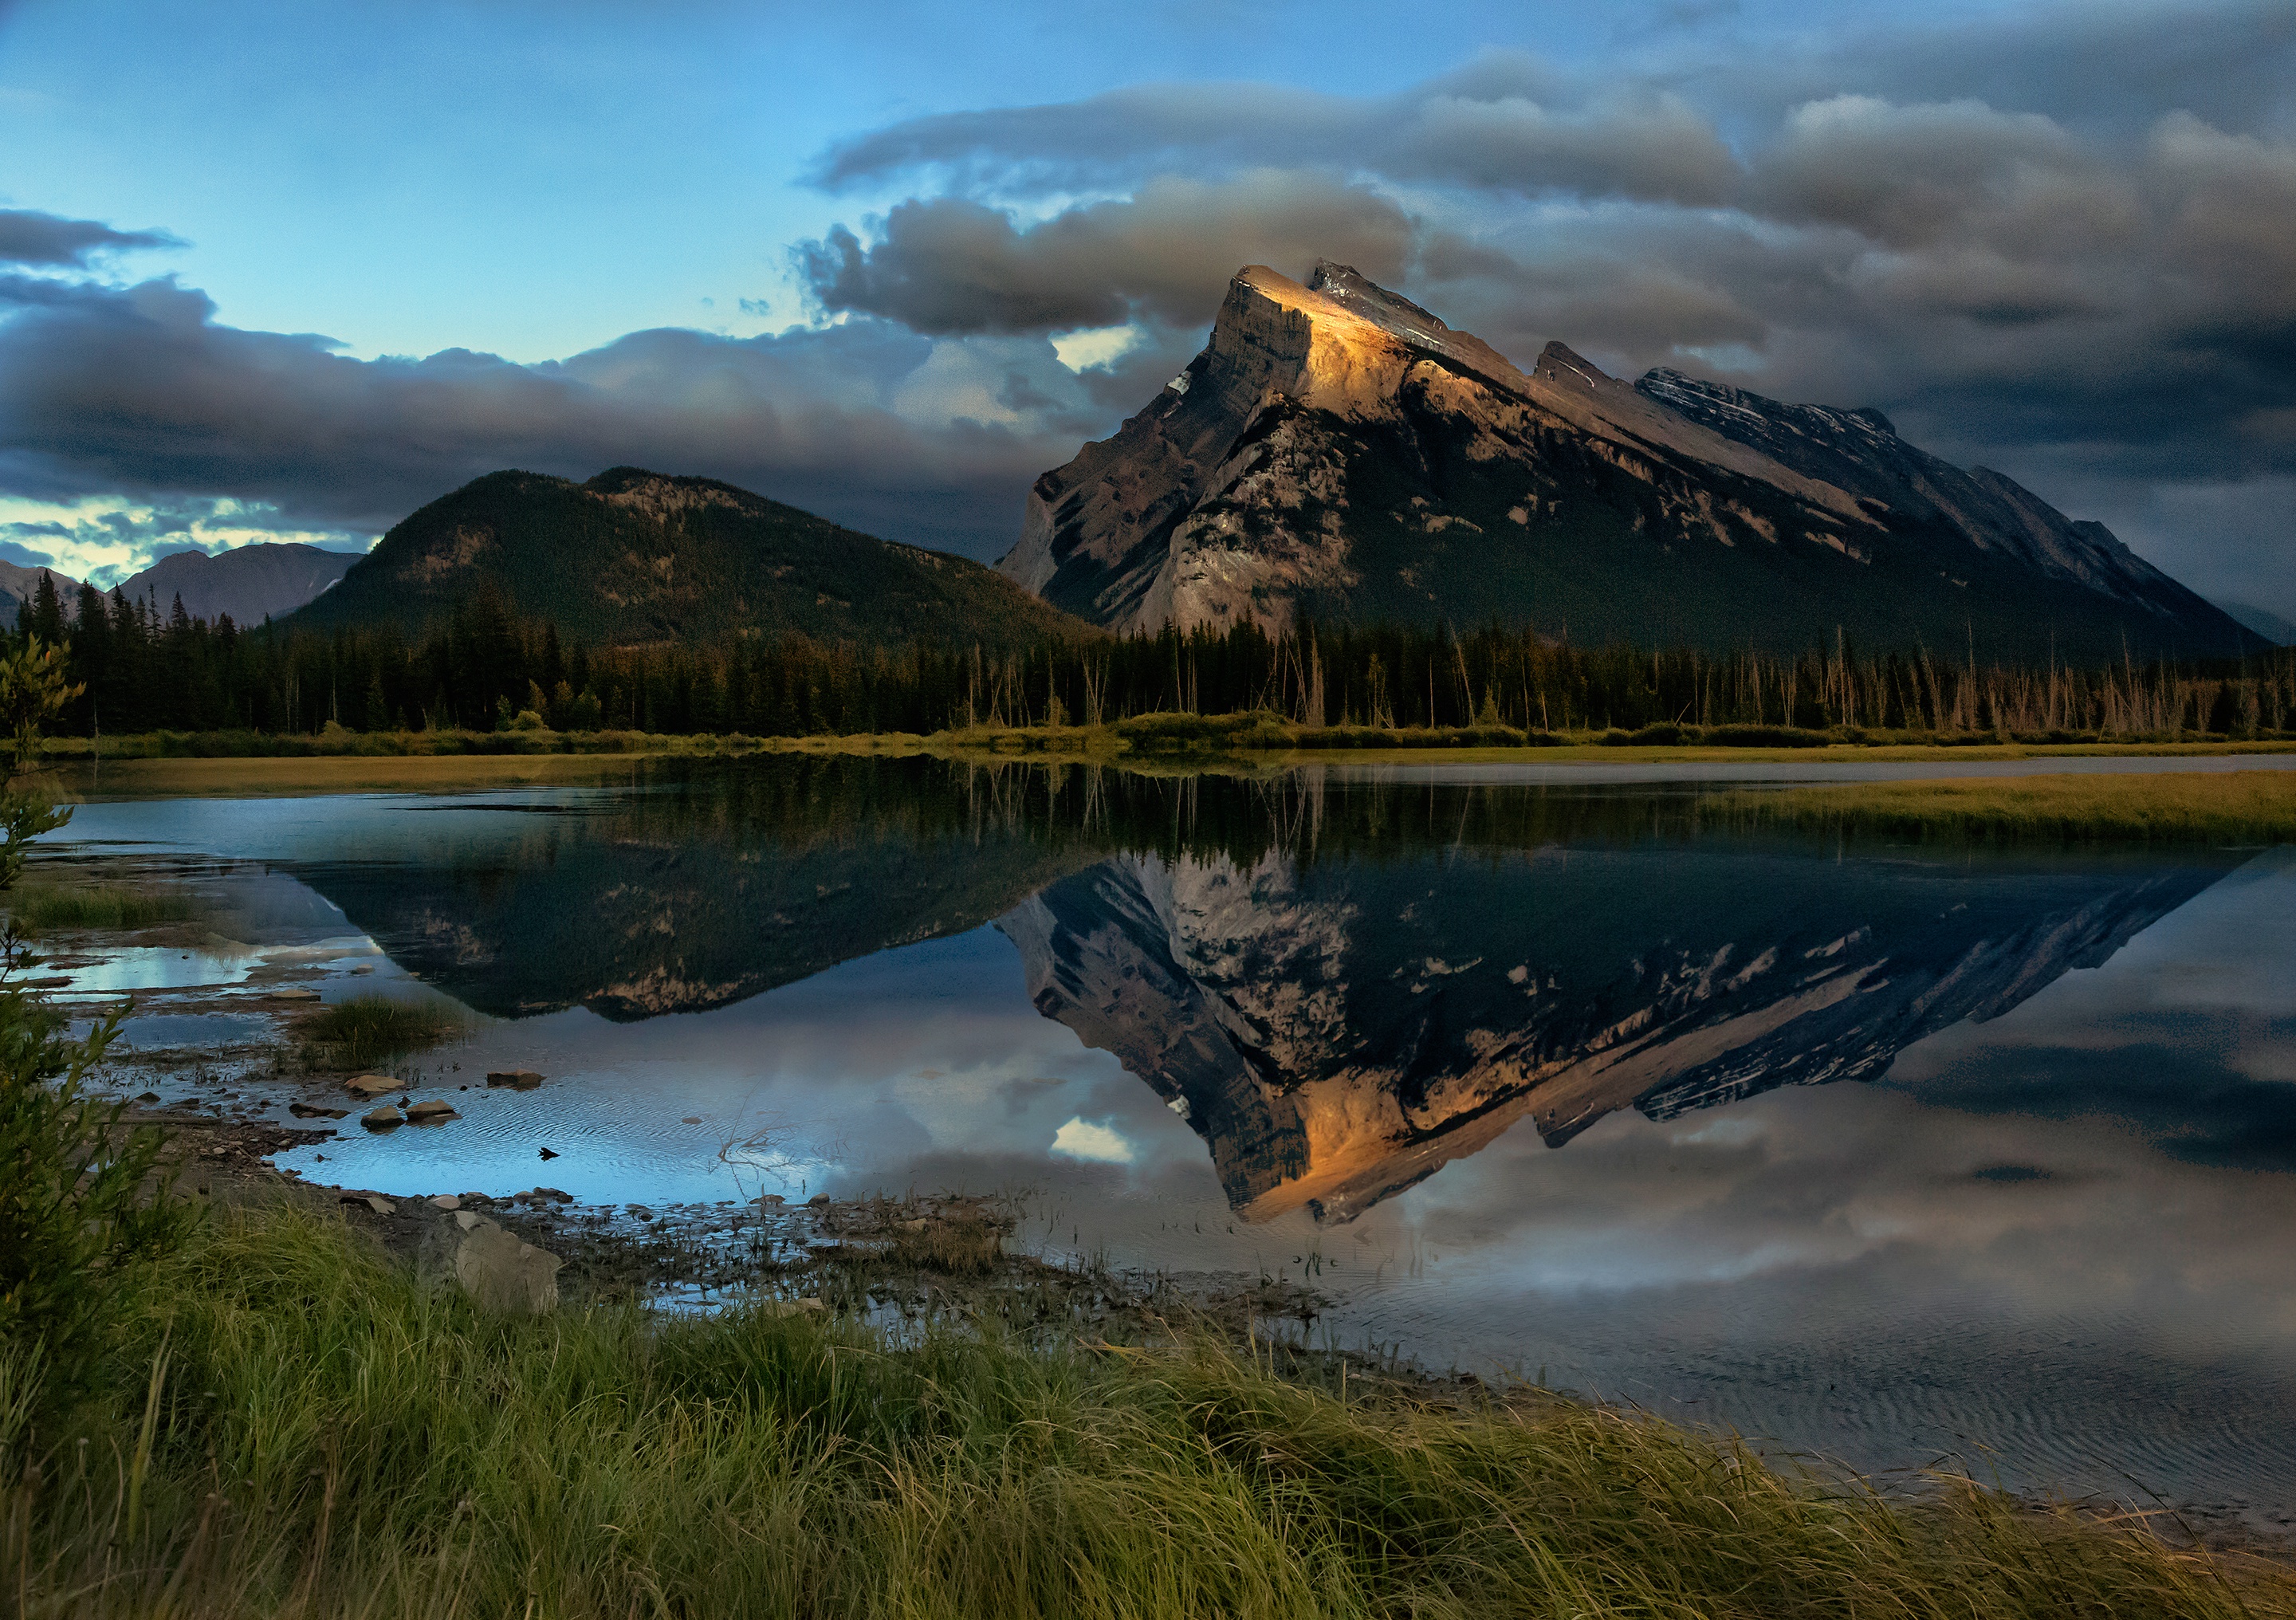 Фотография размером 1024 2048. Озеро в горах. Природа, гора, озеро, отражение. Природа горы вода. Картинки в максимальном разрешении.